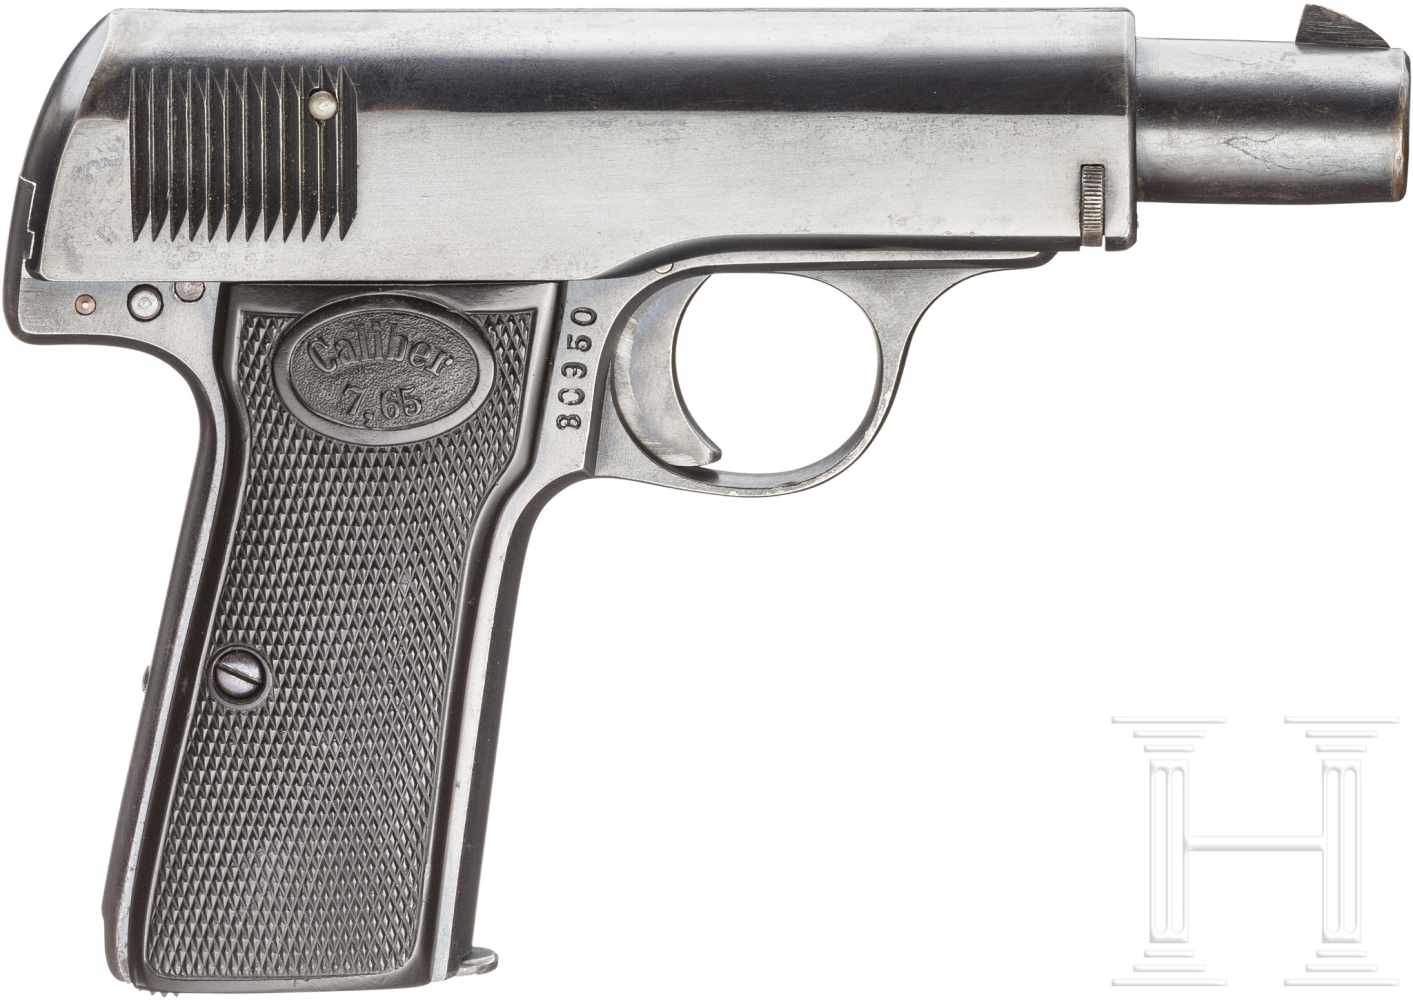 Walther Mod. 3/4, 1. ÜbergangsmodellKal. 7,65 mm Brown., Nr. 30950, Nummerngleich. Blanker Lauf. - Image 2 of 2